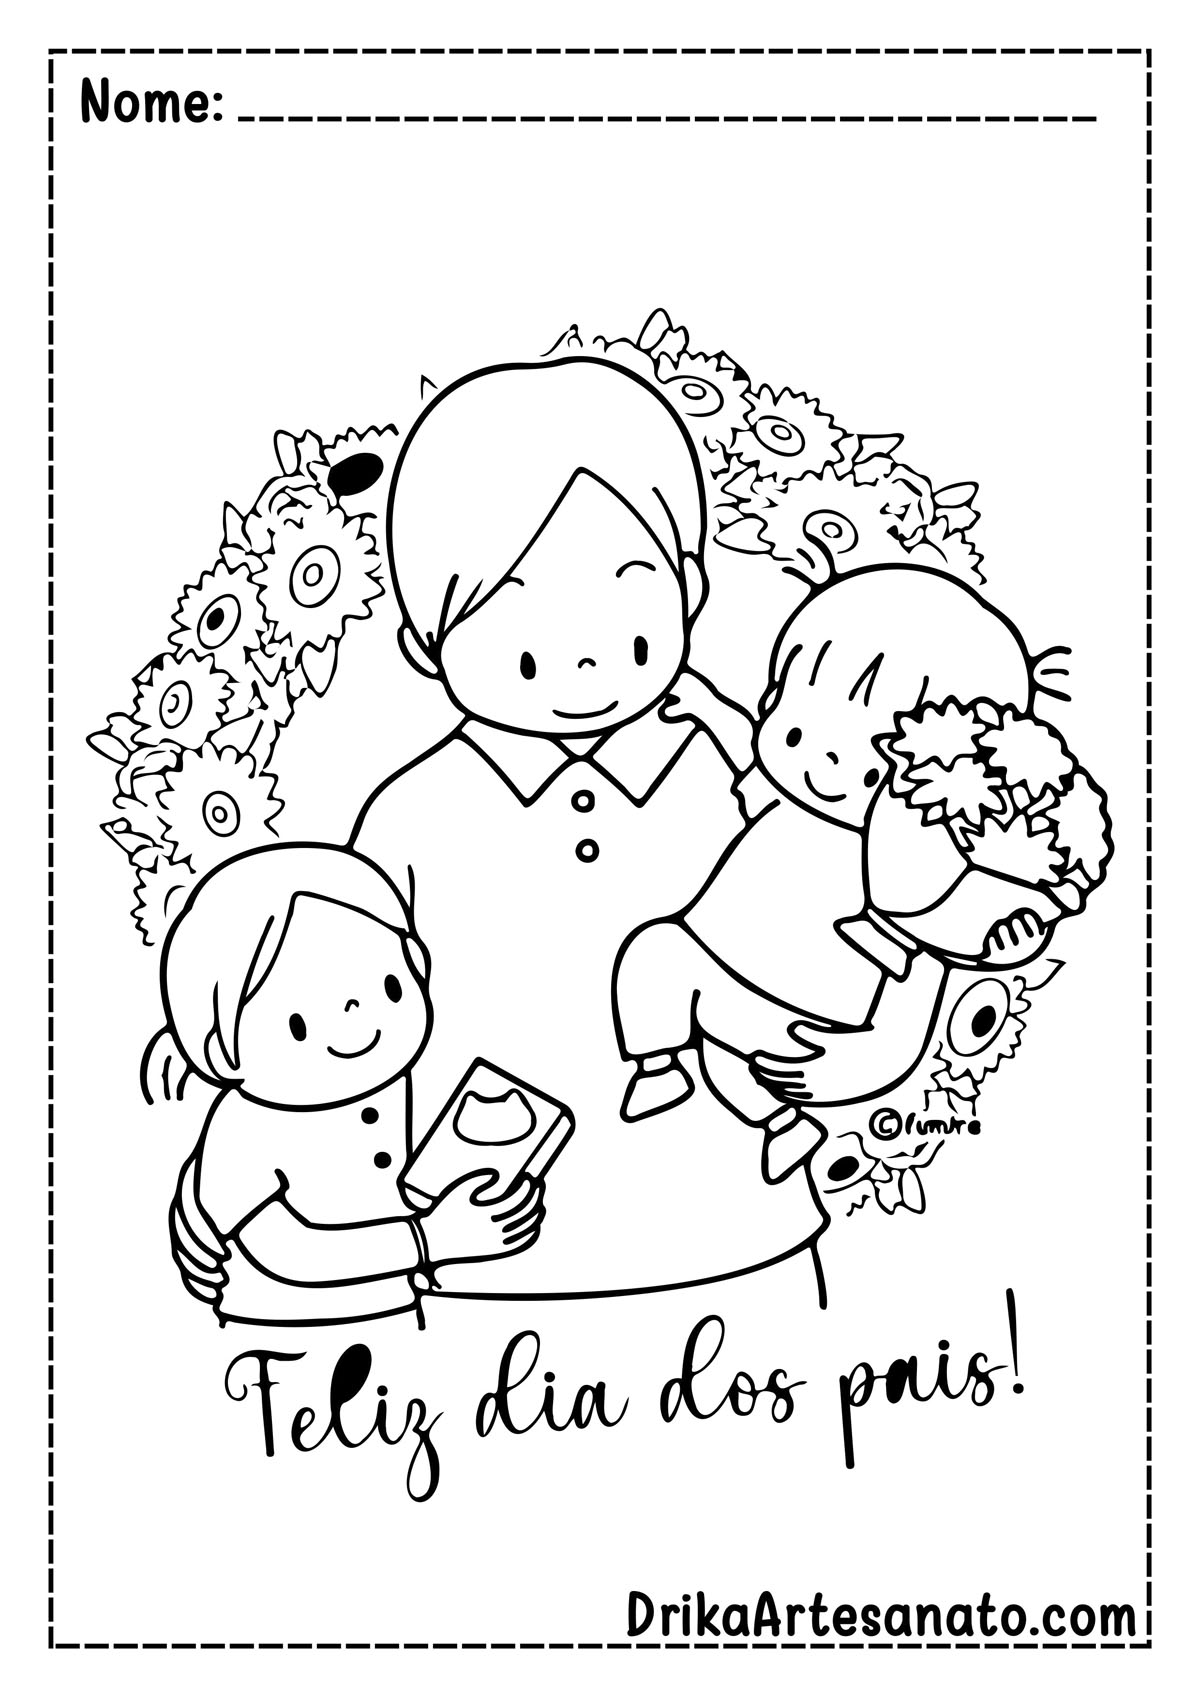 Desenho de Dia dos Pais com Mensagem